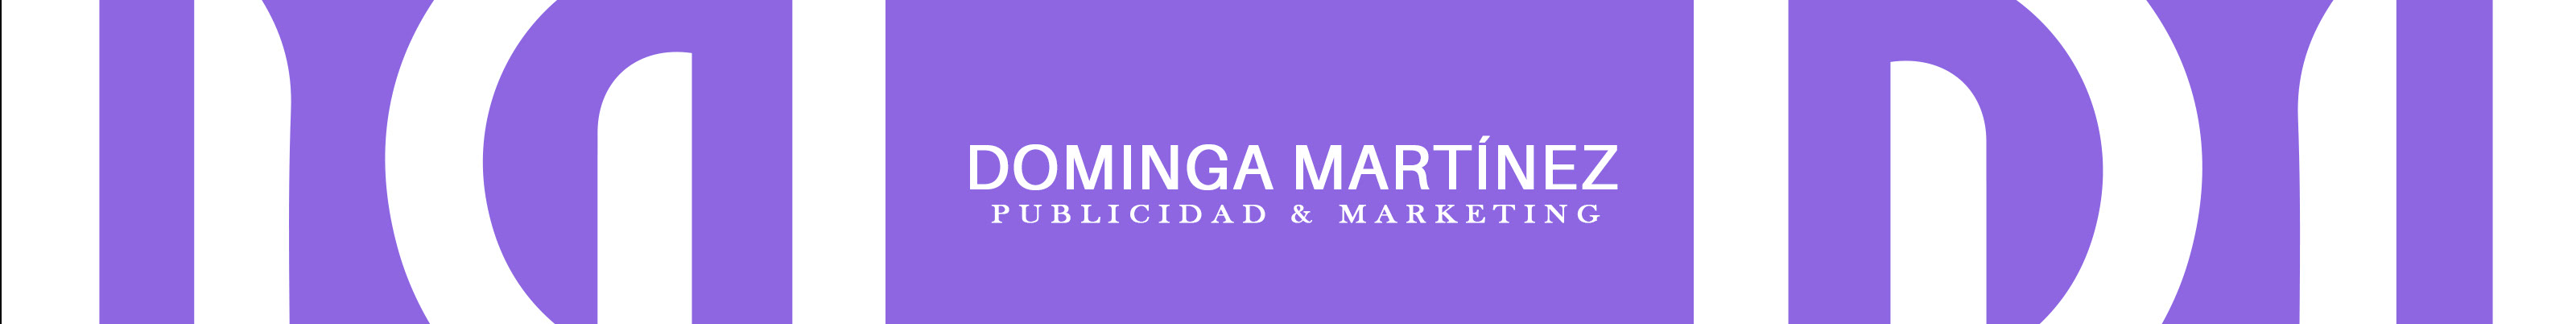 Dominga Martínez's profile banner